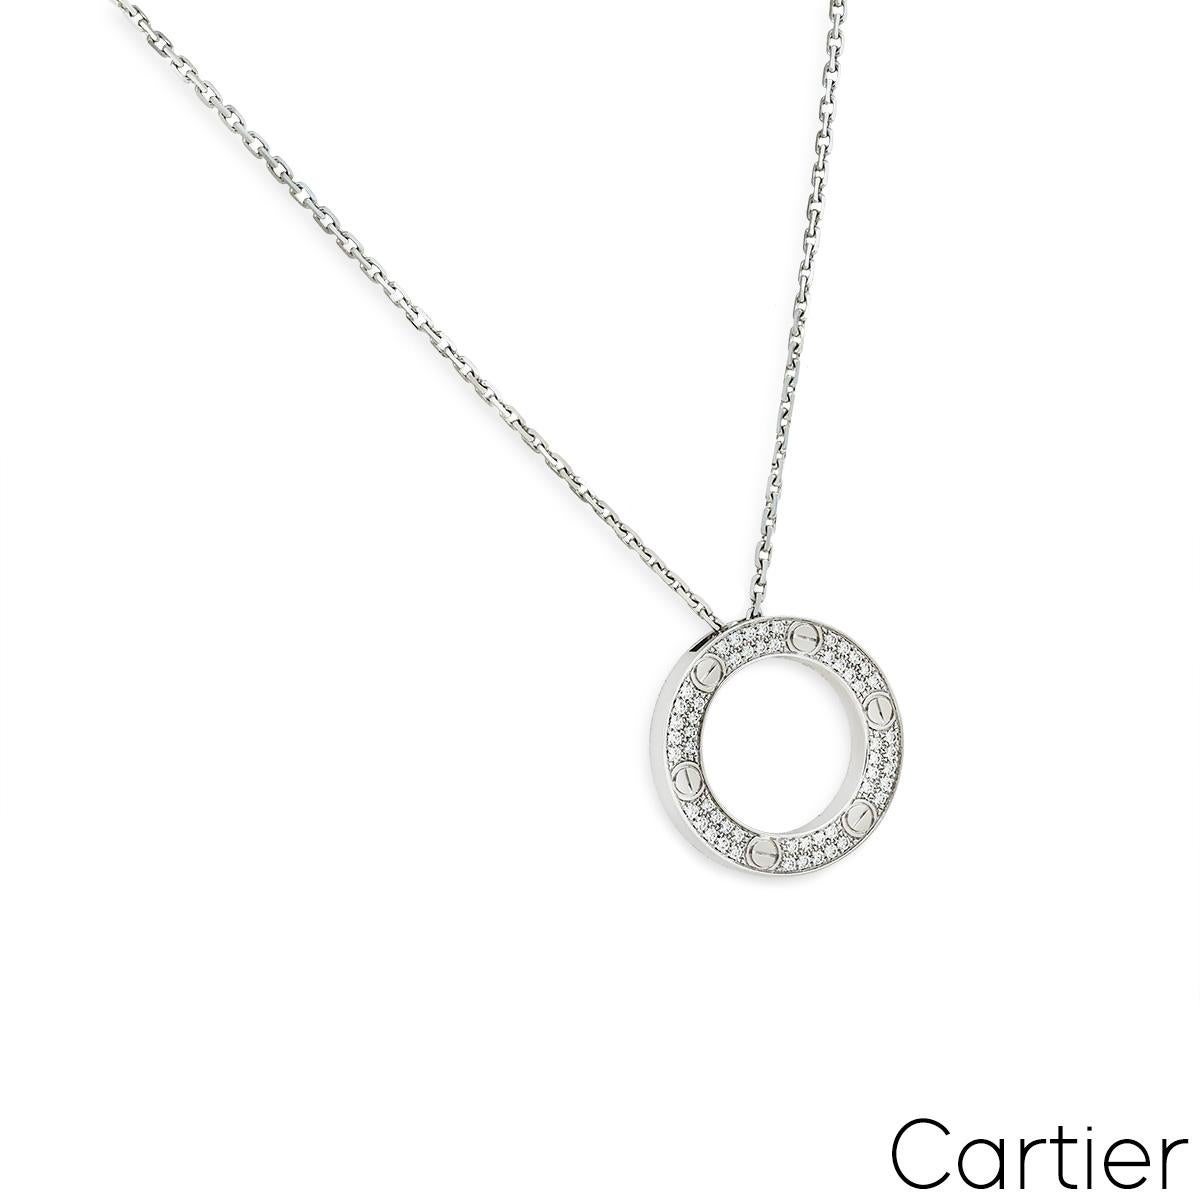 Un collier en or blanc 18 carats de Cartier de la collection Love. Le pendentif est composé d'un motif circulaire ouvert, avec les vis emblématiques de Cartier, et enfin serti de 54 diamants ronds de taille brillant, pour un total de 0,34ct. Le mot